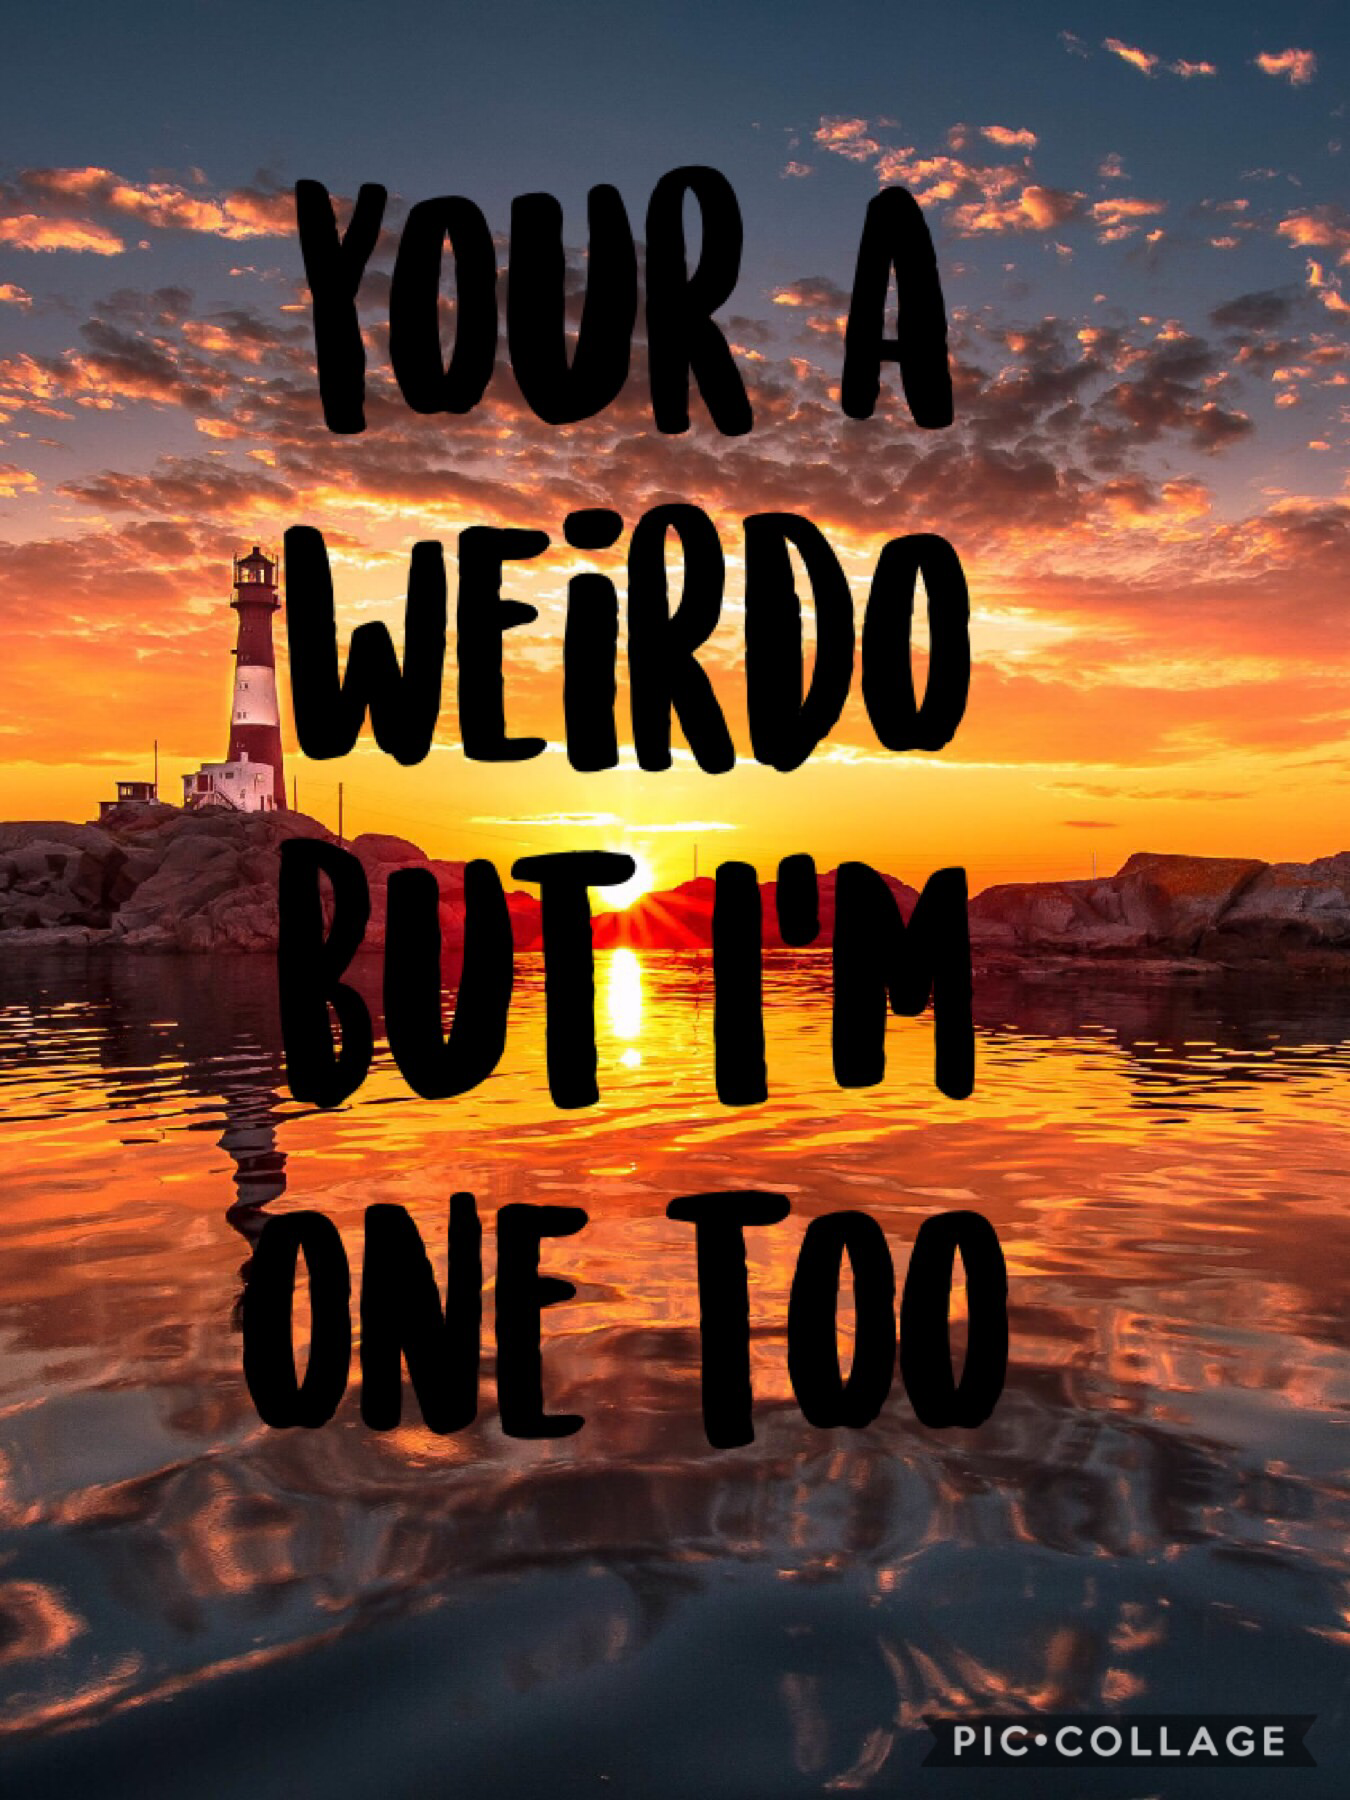 Weirdos Forever
